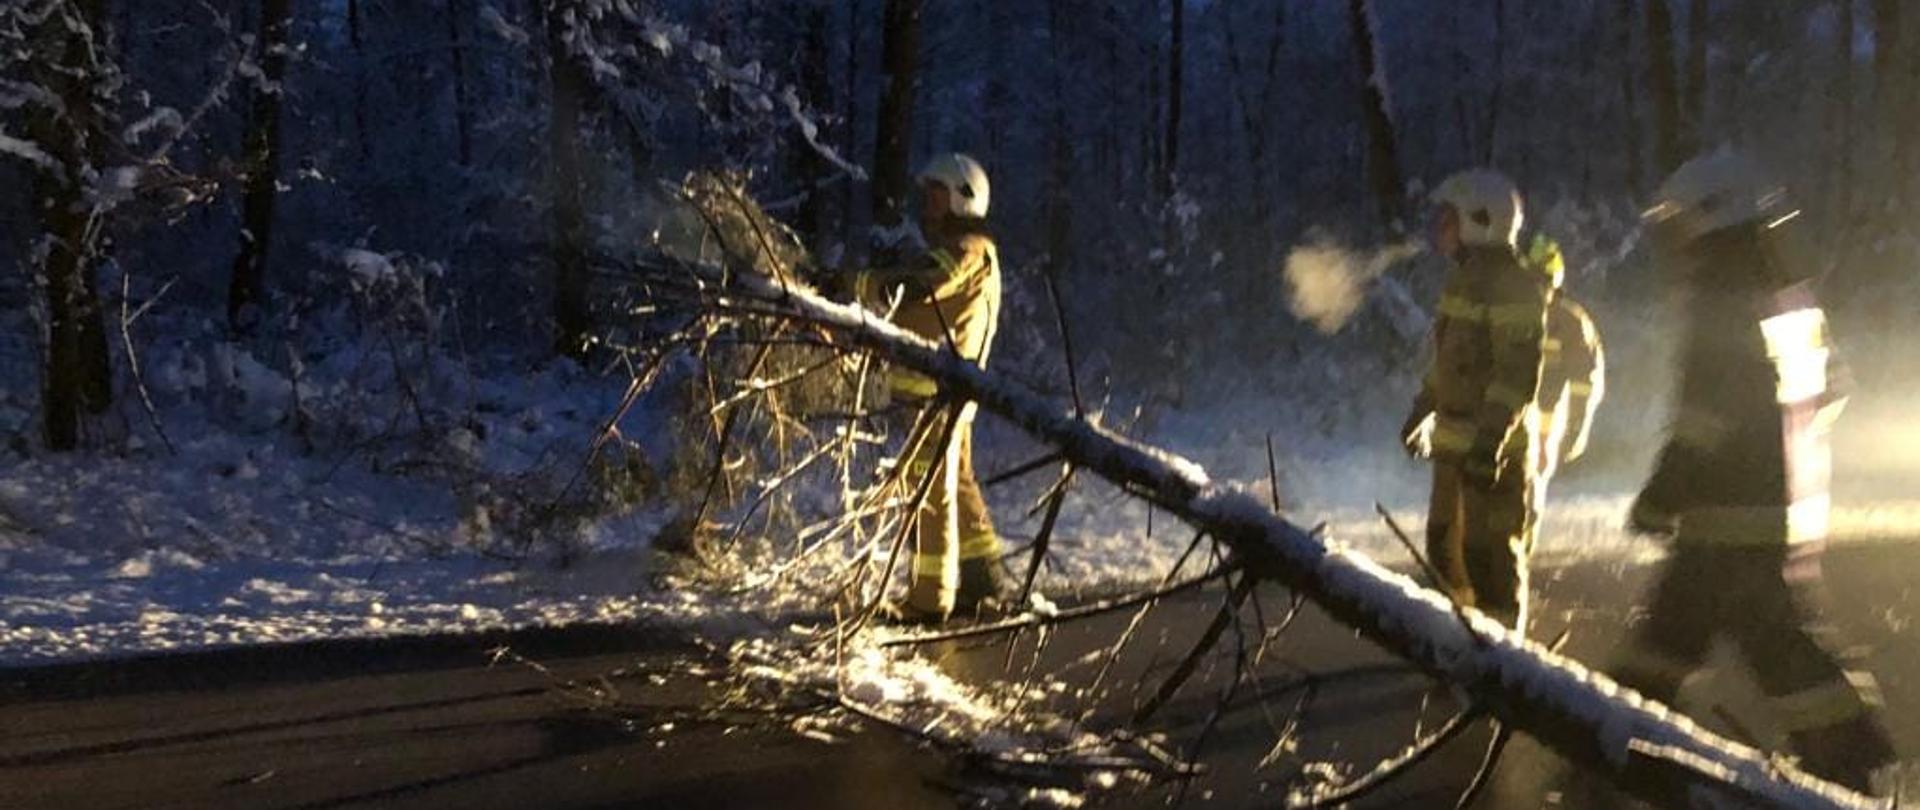 Trzech strażaków usuwa drzewo pochylone nad jezdnią po opadach mokrego śniegu.